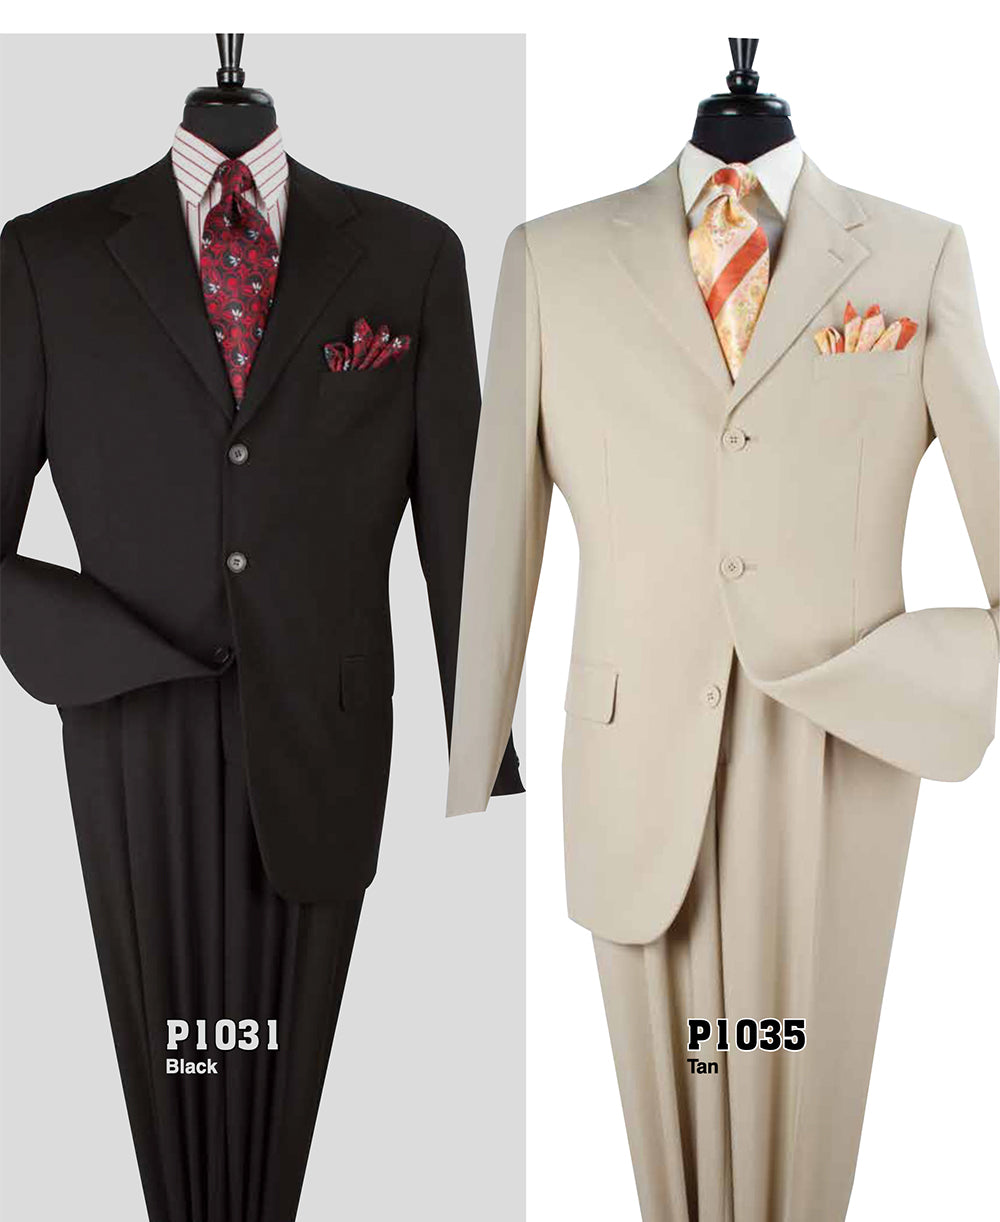 Men's High Fashion Suit P1031